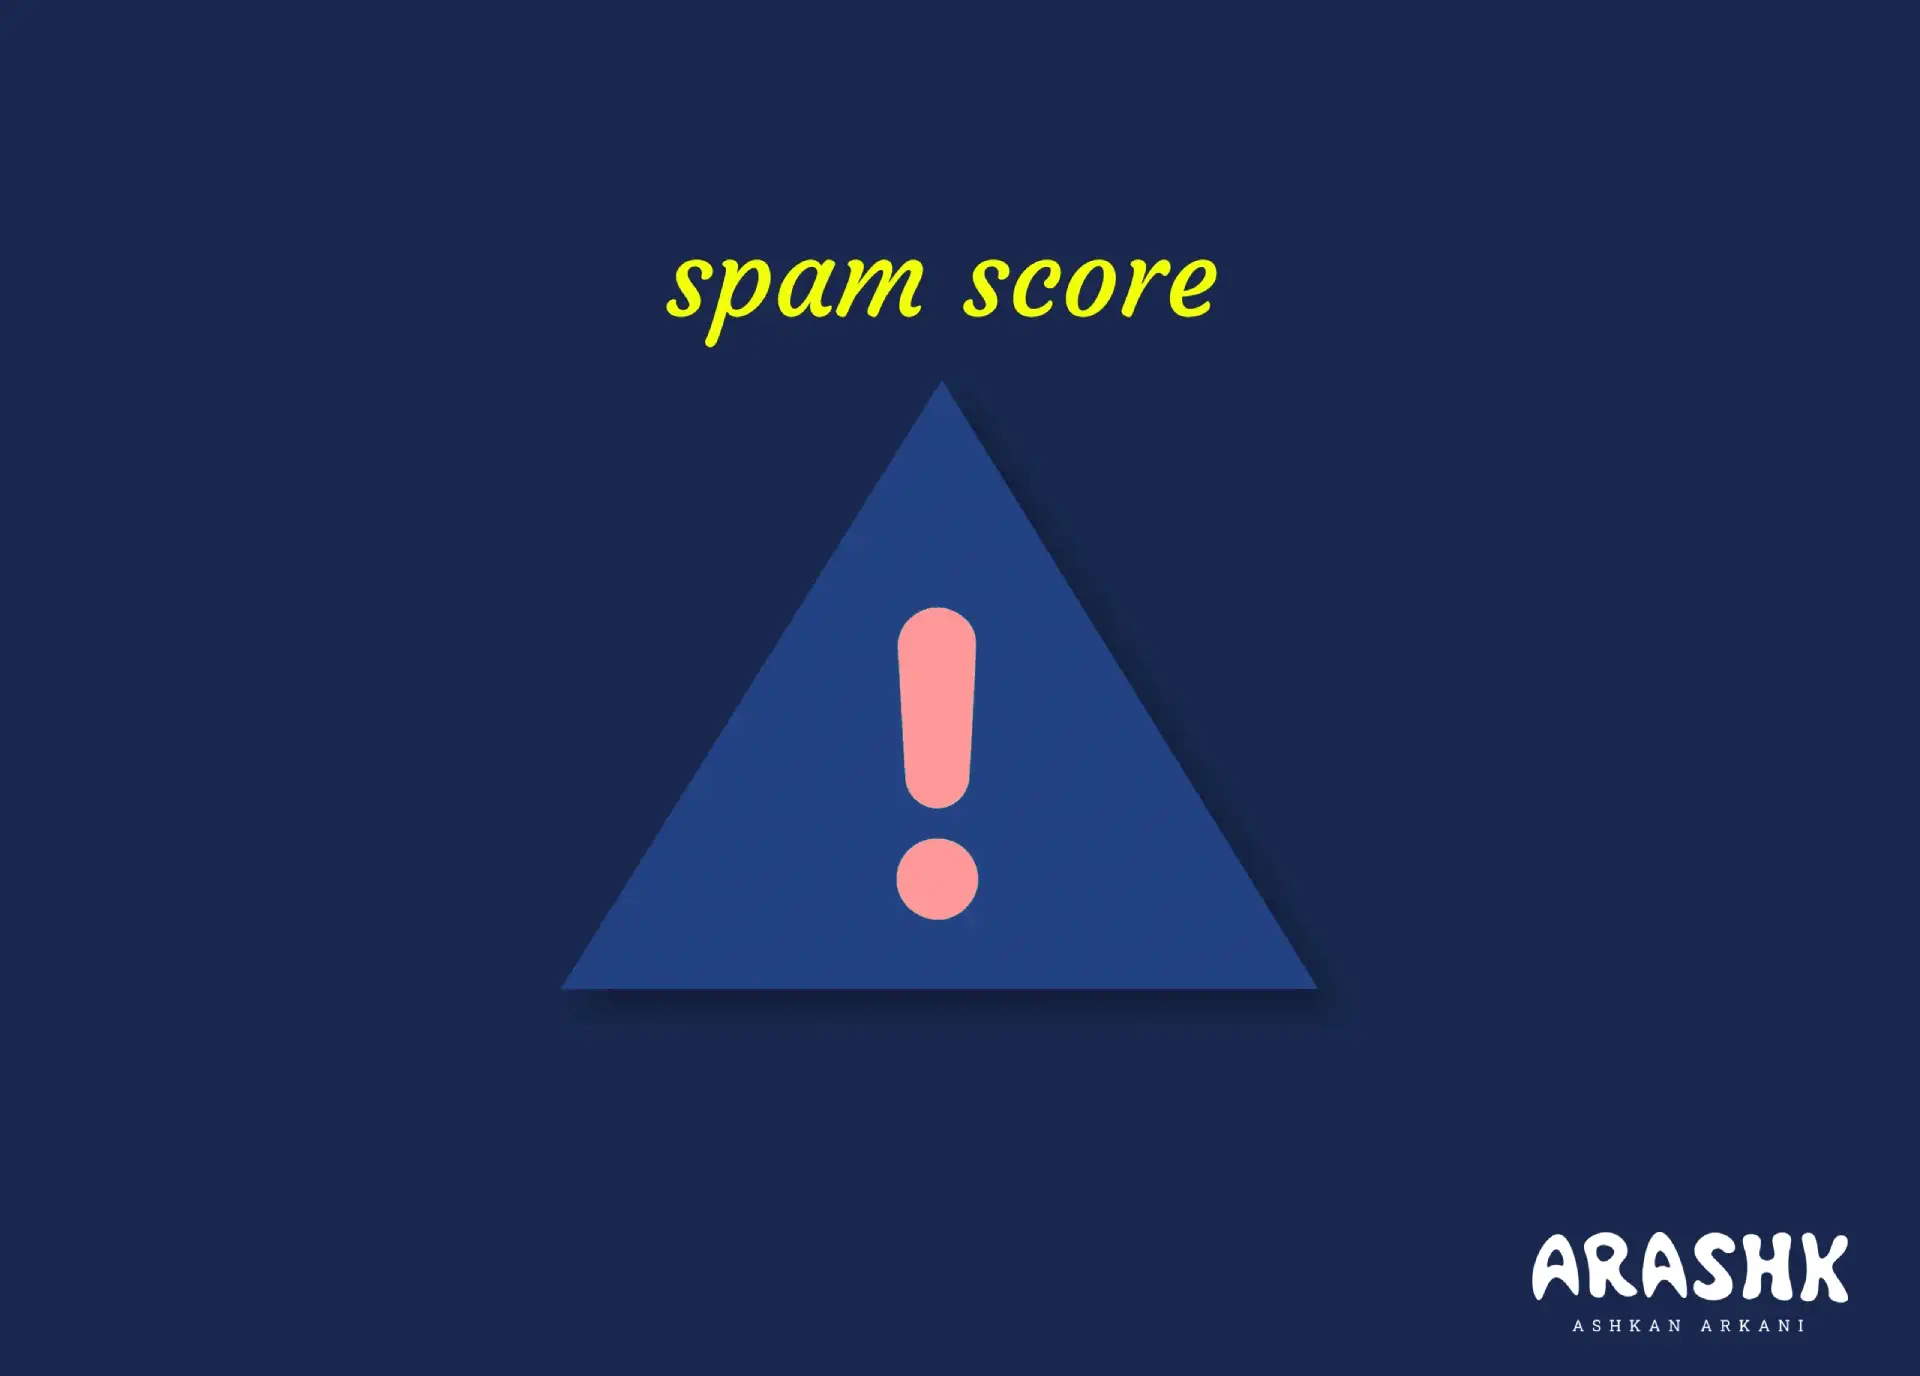 اسپم اسکور یا Spam Score چیست؟